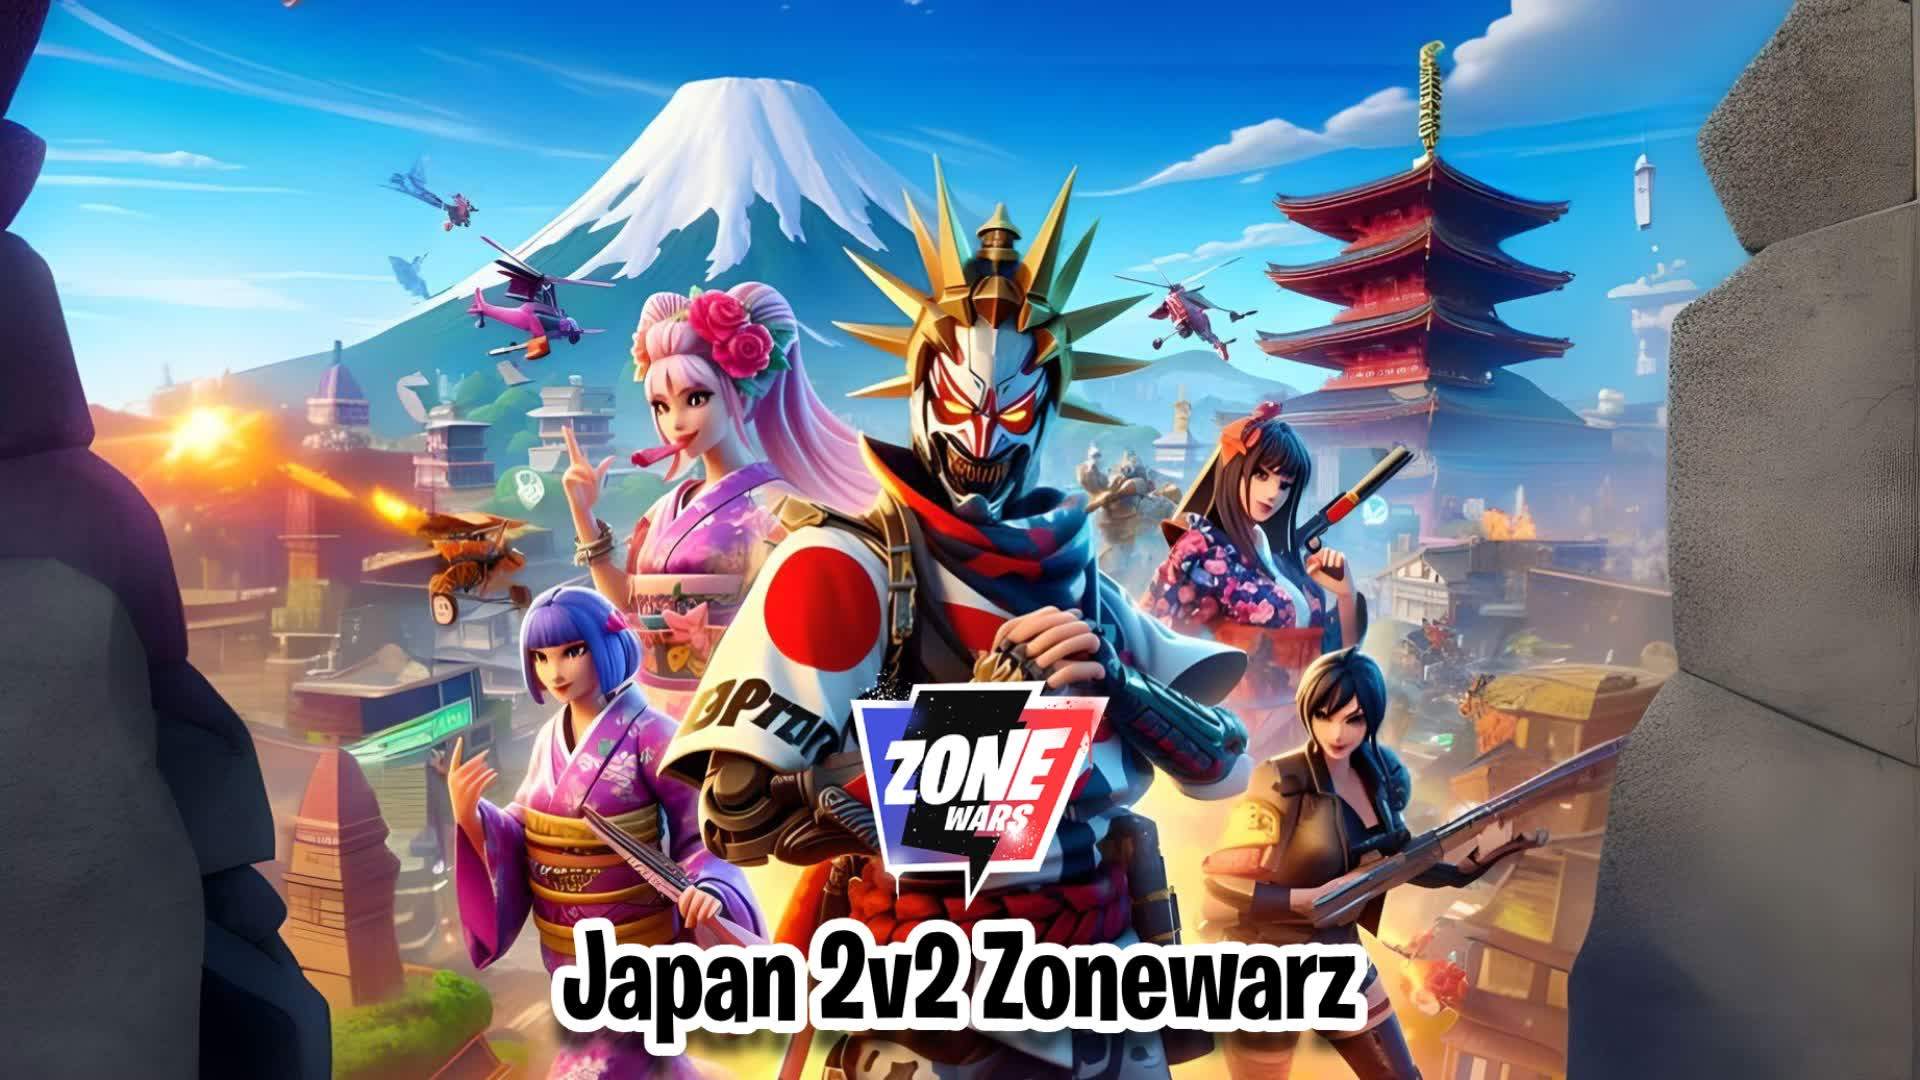 Japan 2v2 Zonewarz